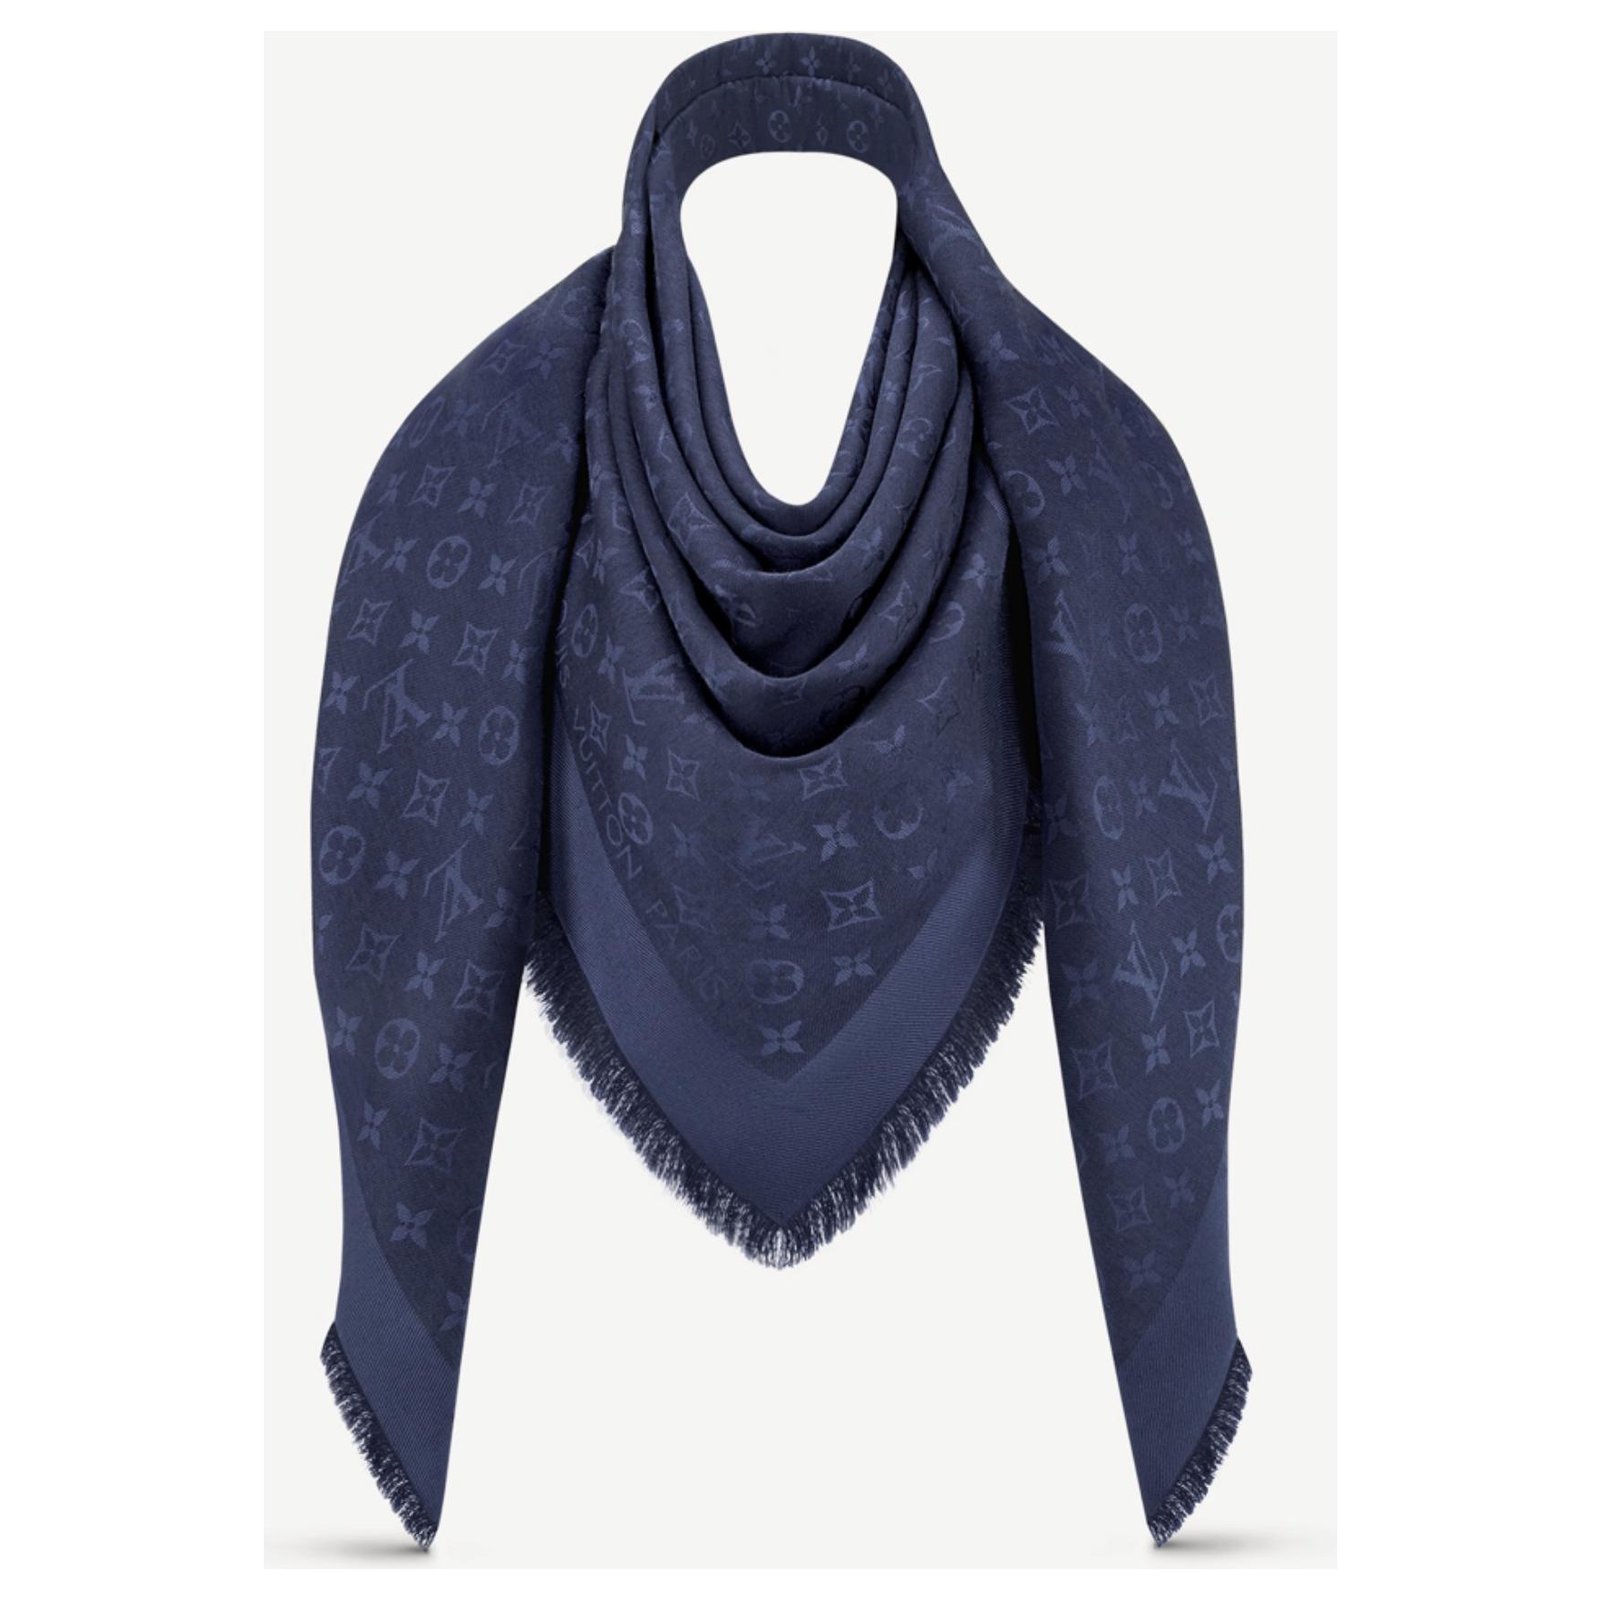 Taubenblauer Schal / Tuch kombinieren: 'LV shawl' (Damen, Schal / Tuch,  blau, Bilder)